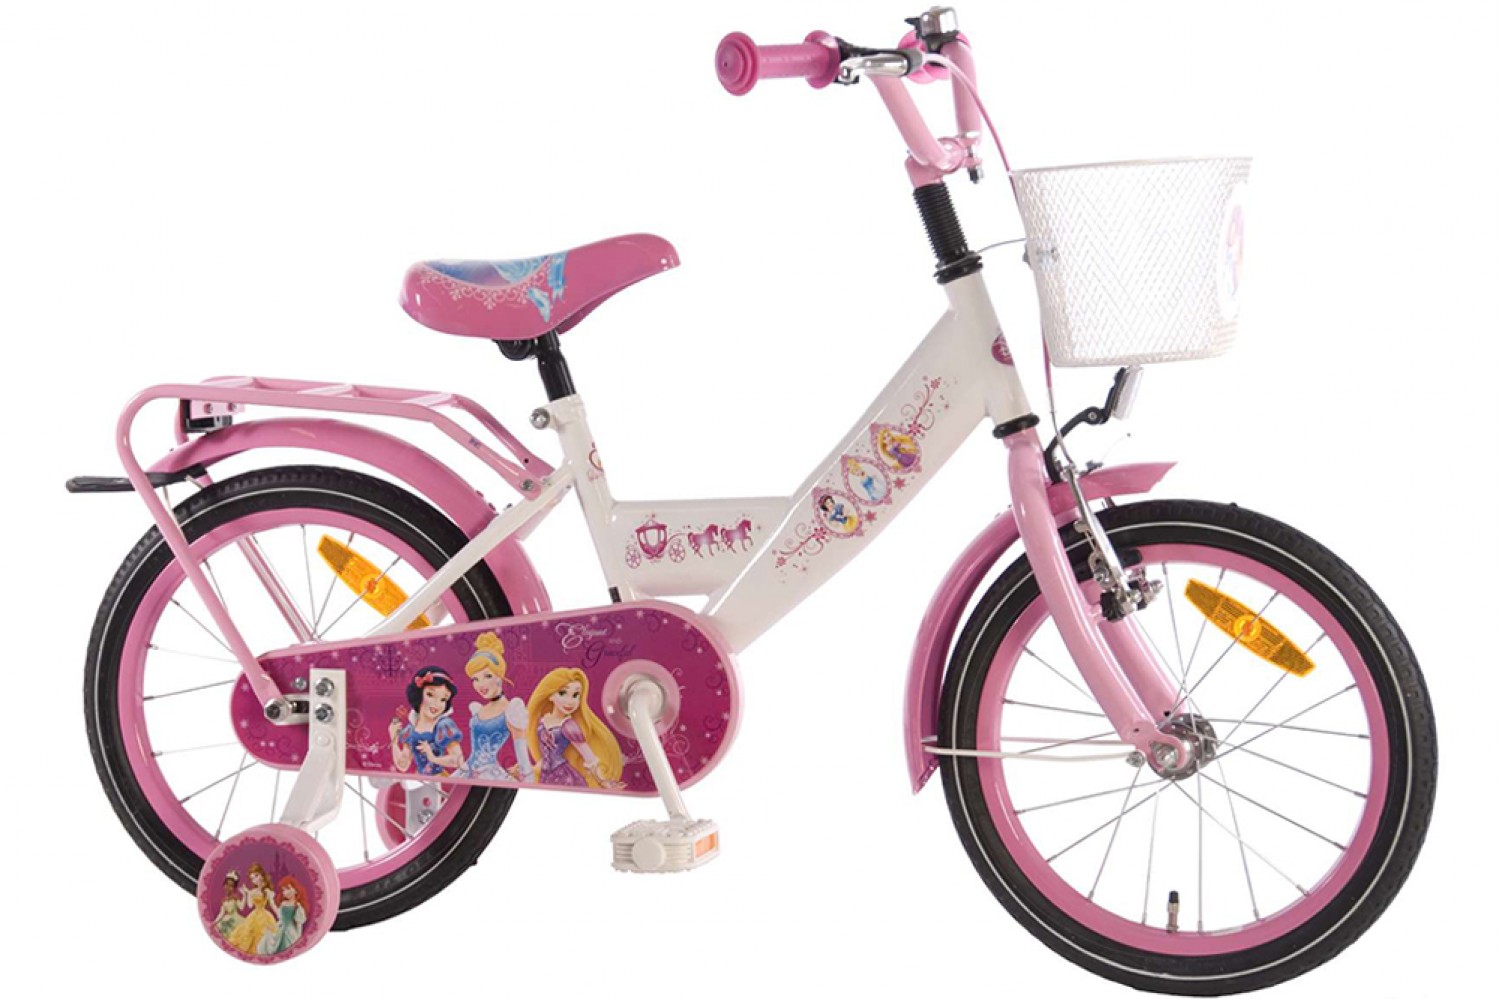 Draaien Verwaand Het kantoor Disney Princess Wit-Roze 16 inch - Meisjesfiets | City-Bikes.nl